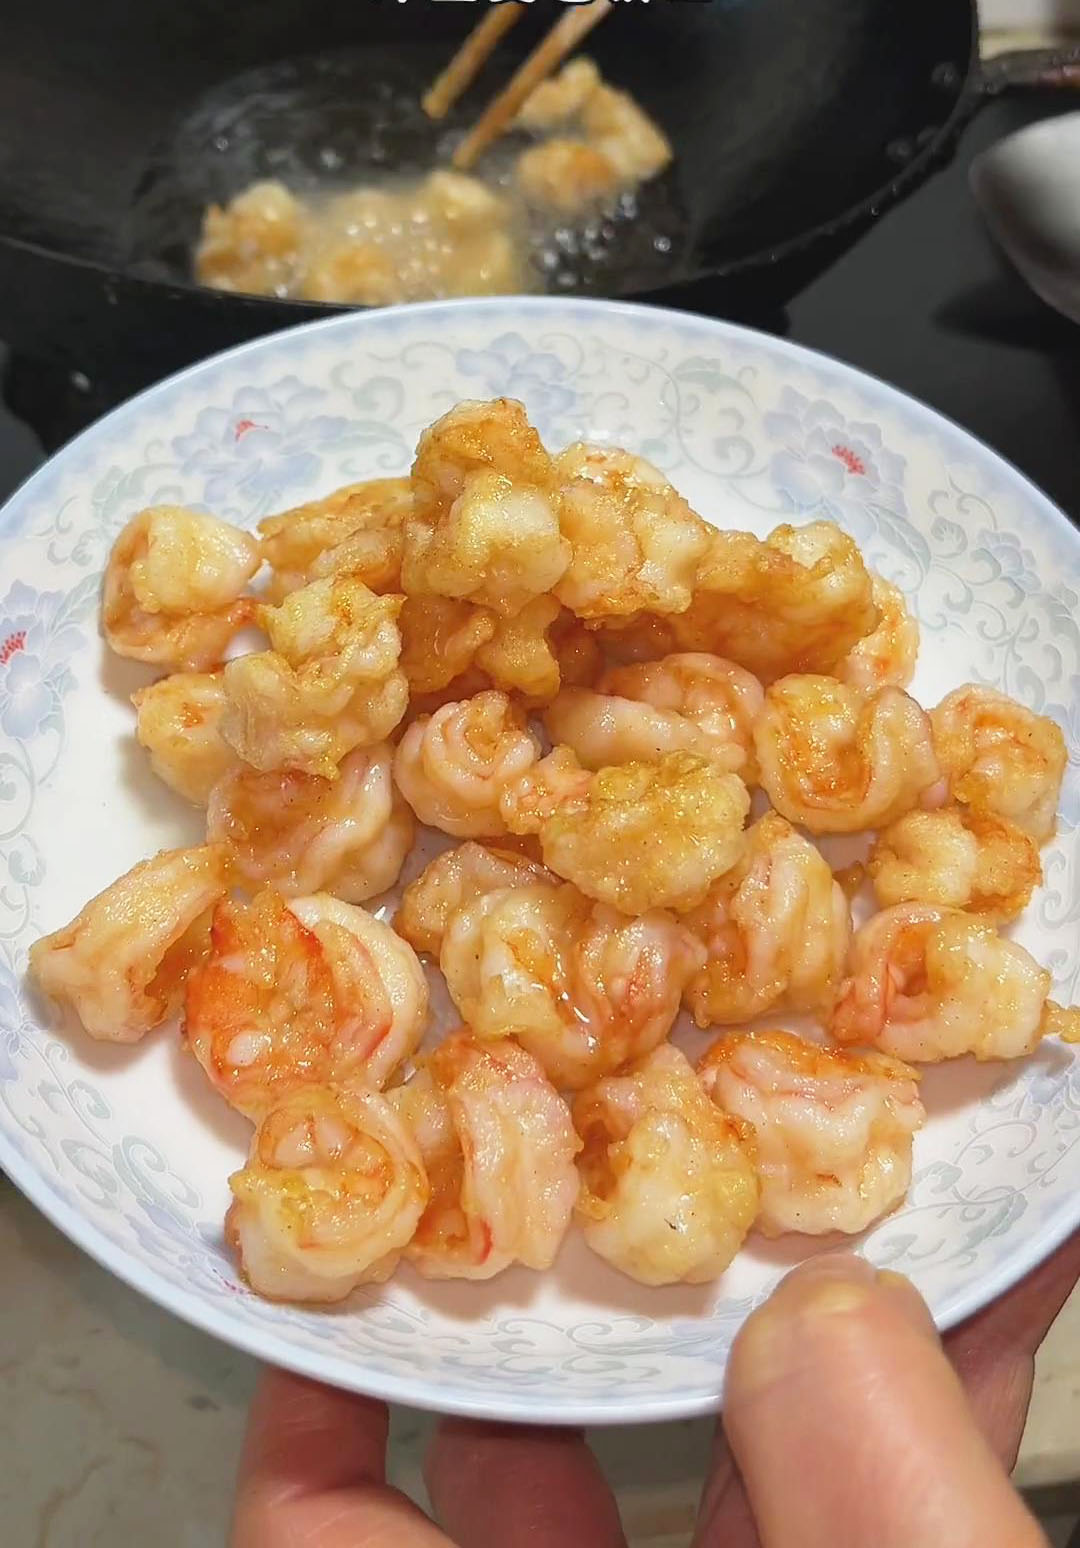 shrimp after frying